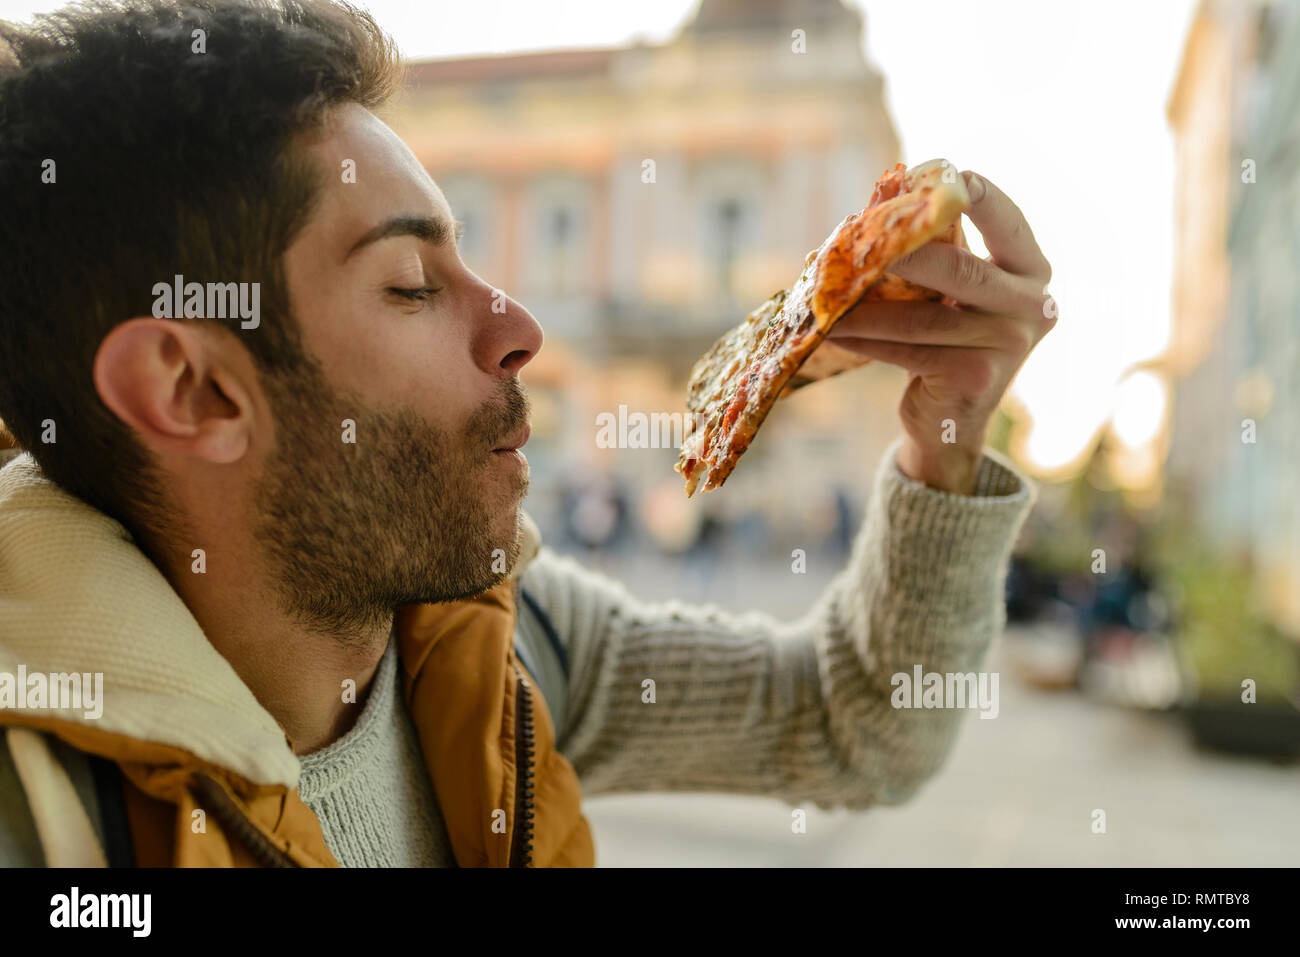 Bello barbuto giovane con camicia arancione di mangiare la pizza in strada di città Foto Stock